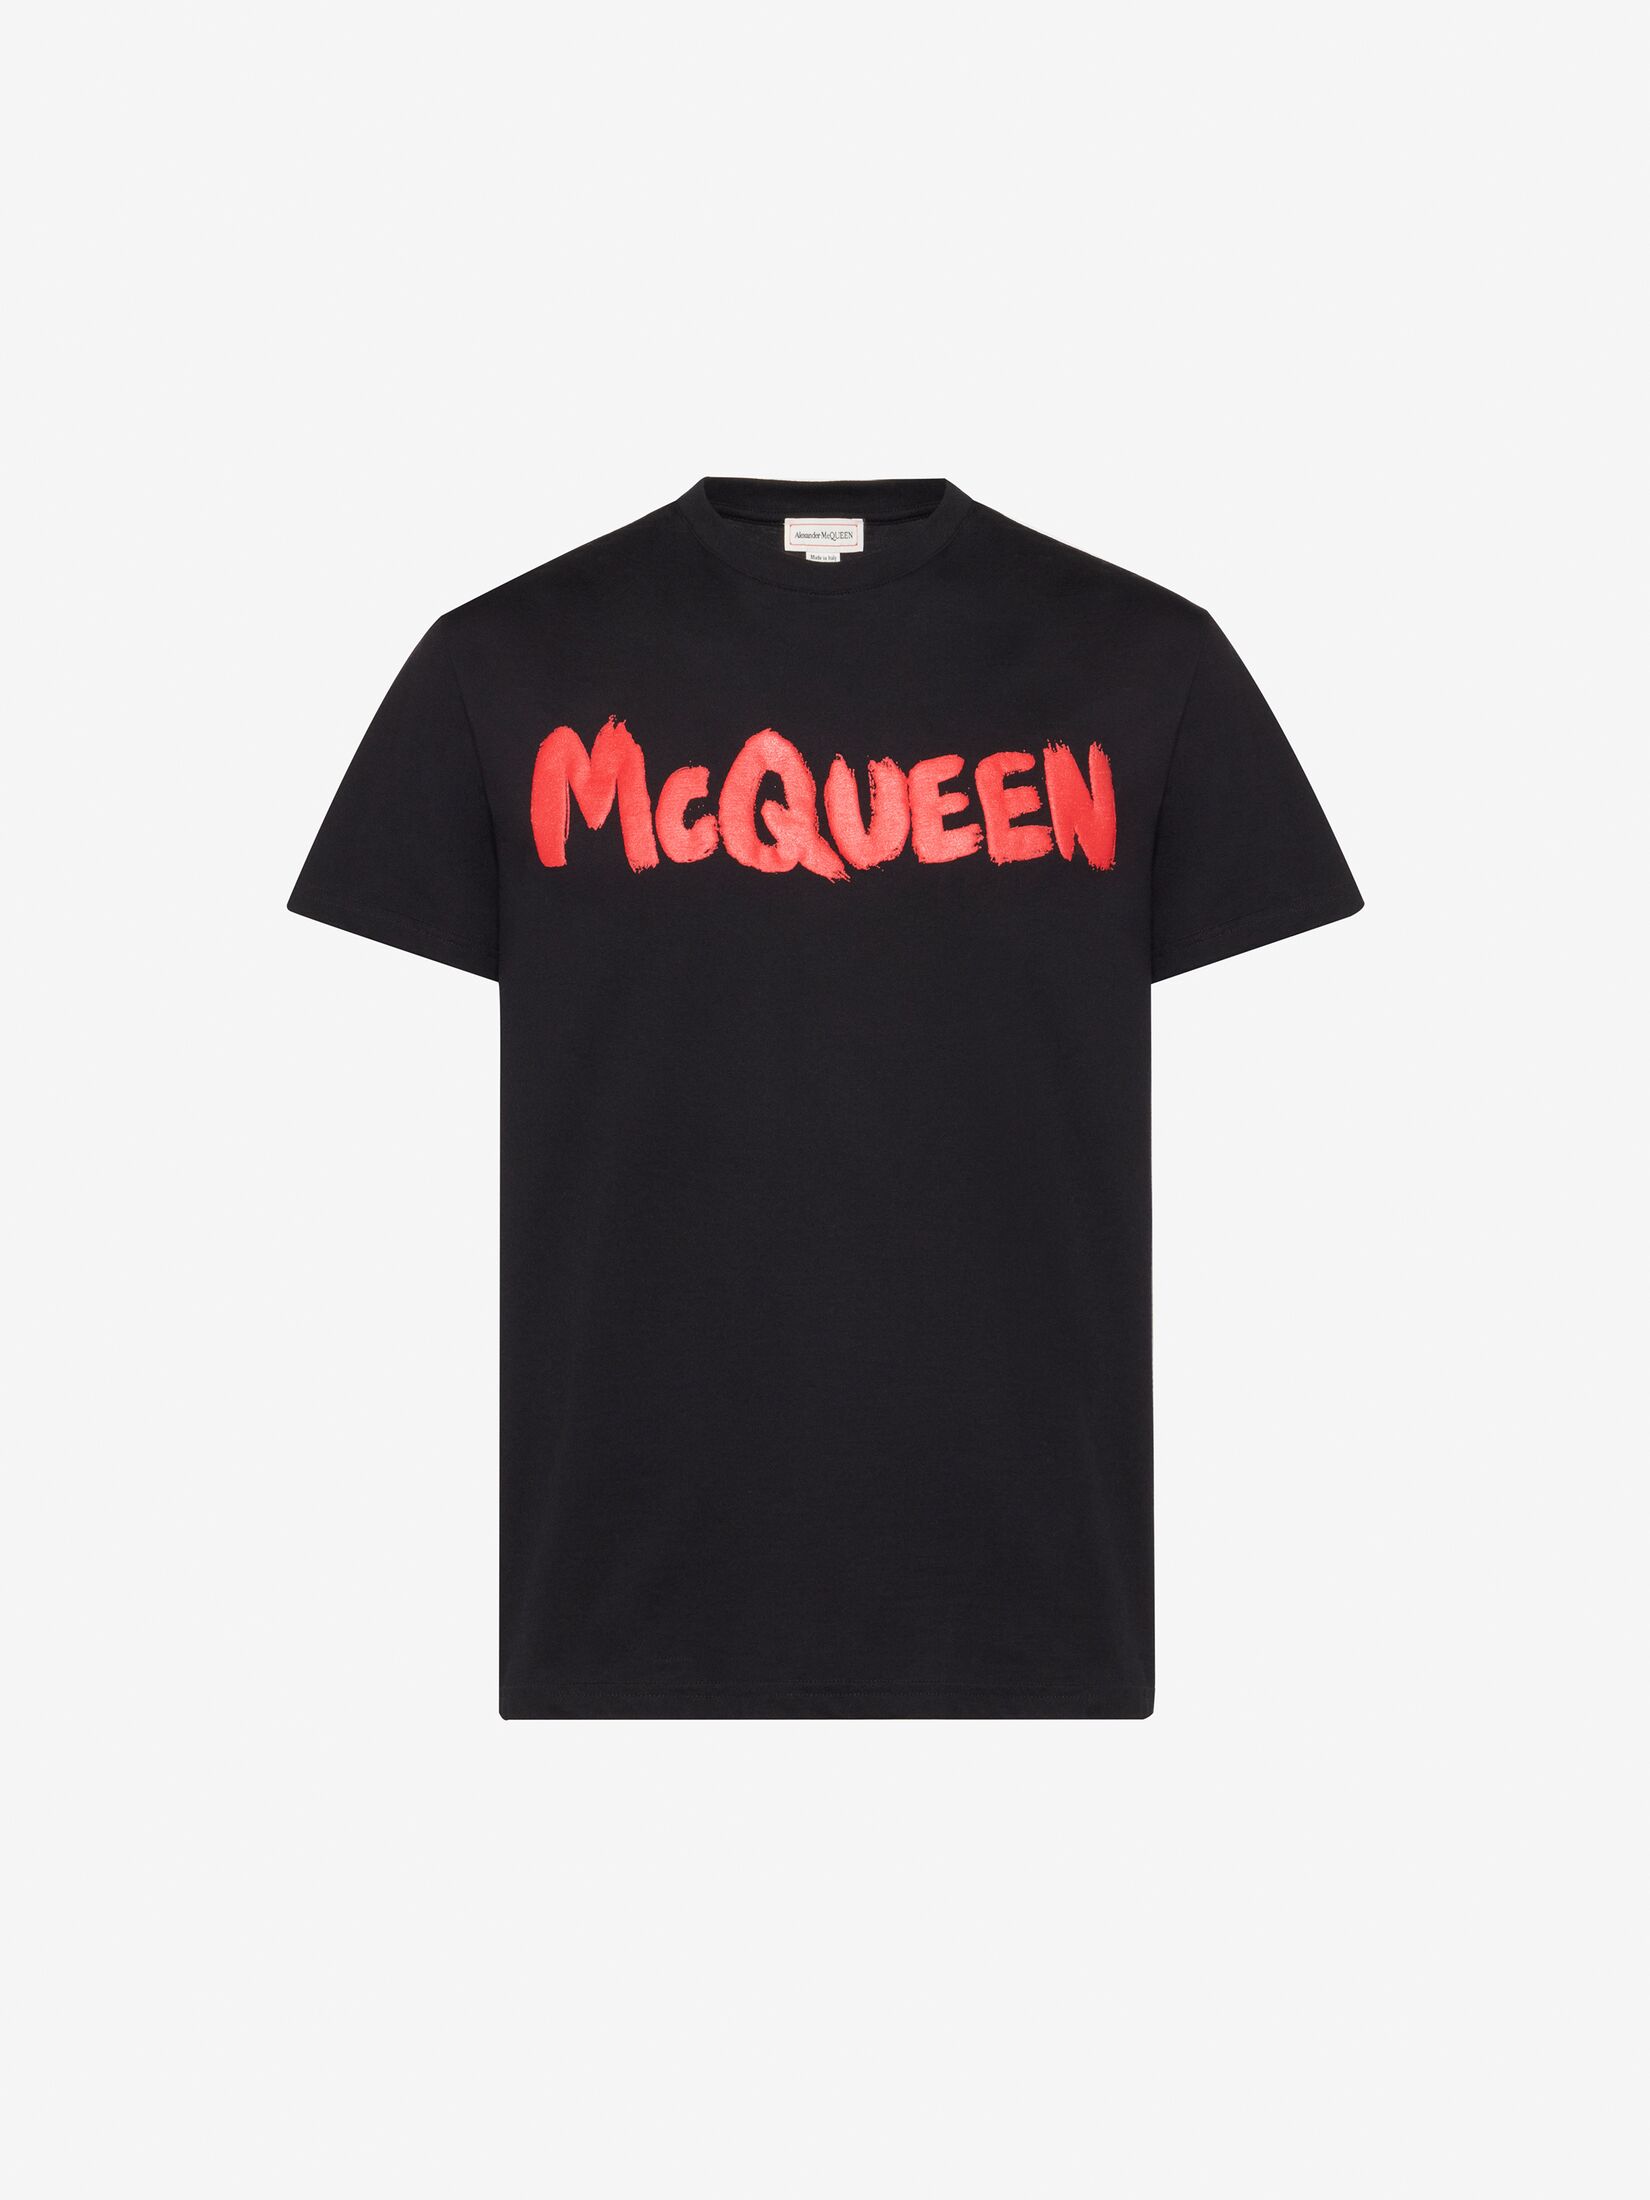 McQueen Graffiti T-shirt in Black/Grey | Alexander McQueen NL